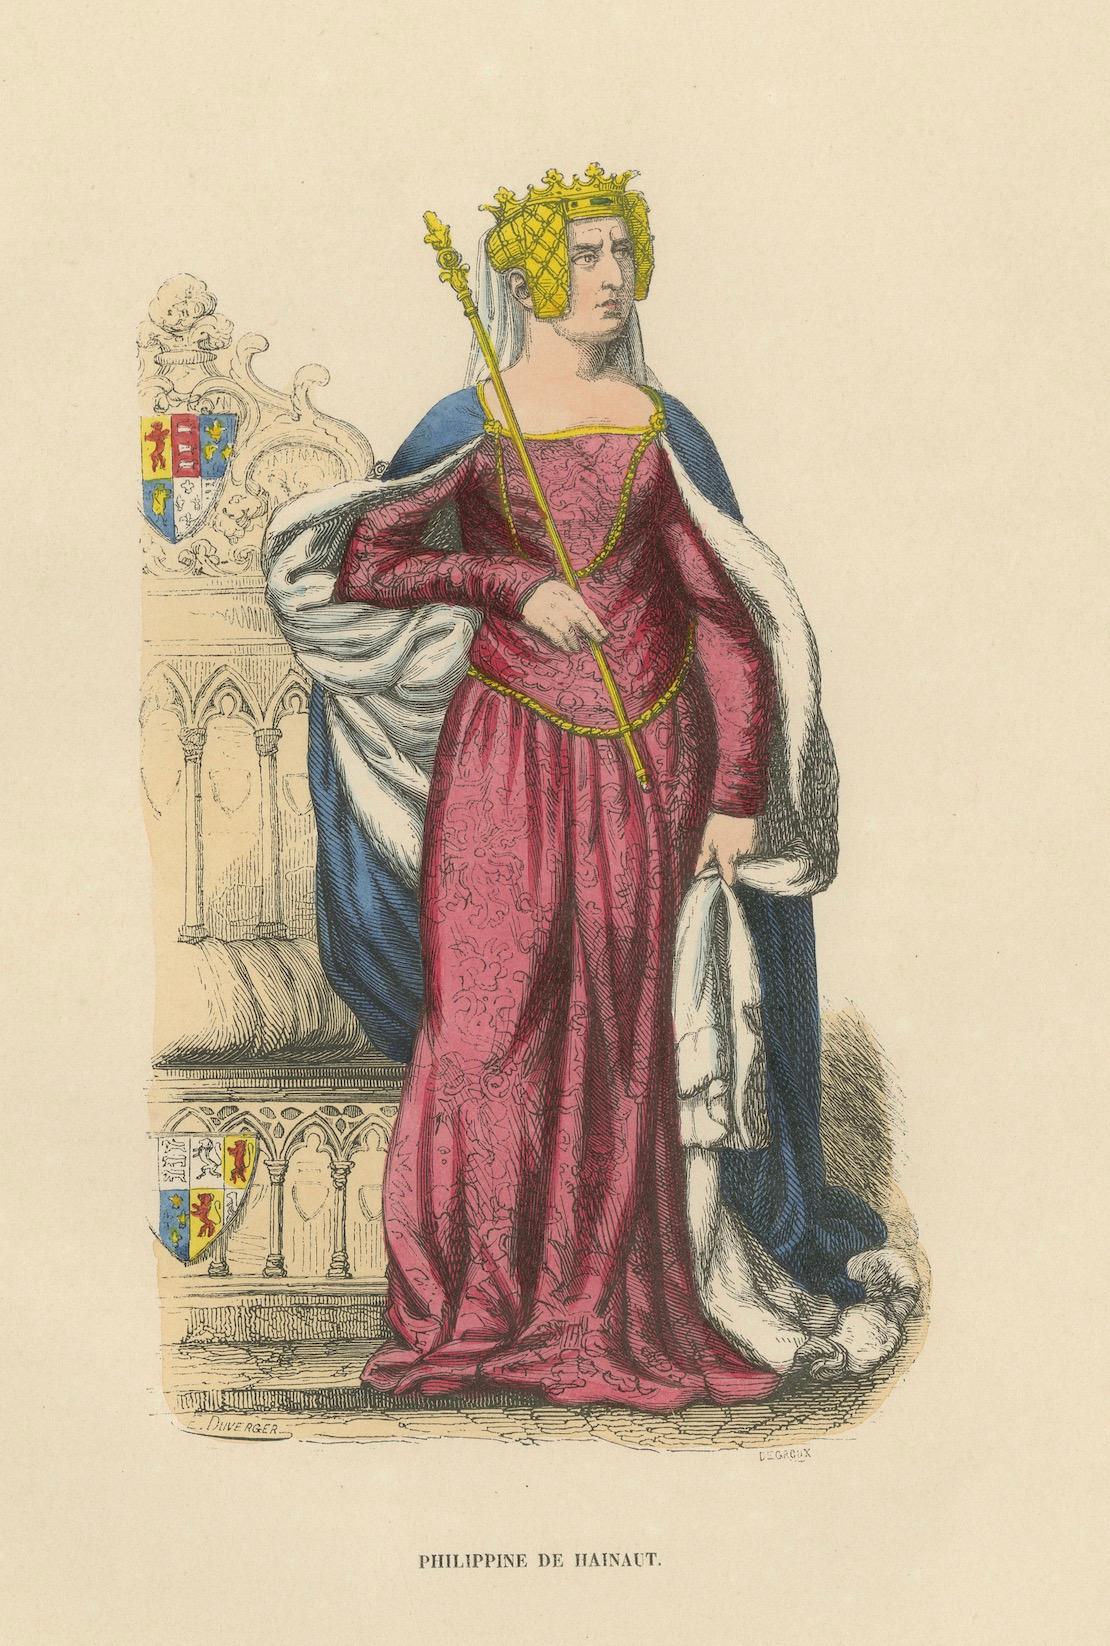 Queen Philippa of Hainaut in Ceremonial Attire, Costume Di Moyen Age, 1847 For Sale 1